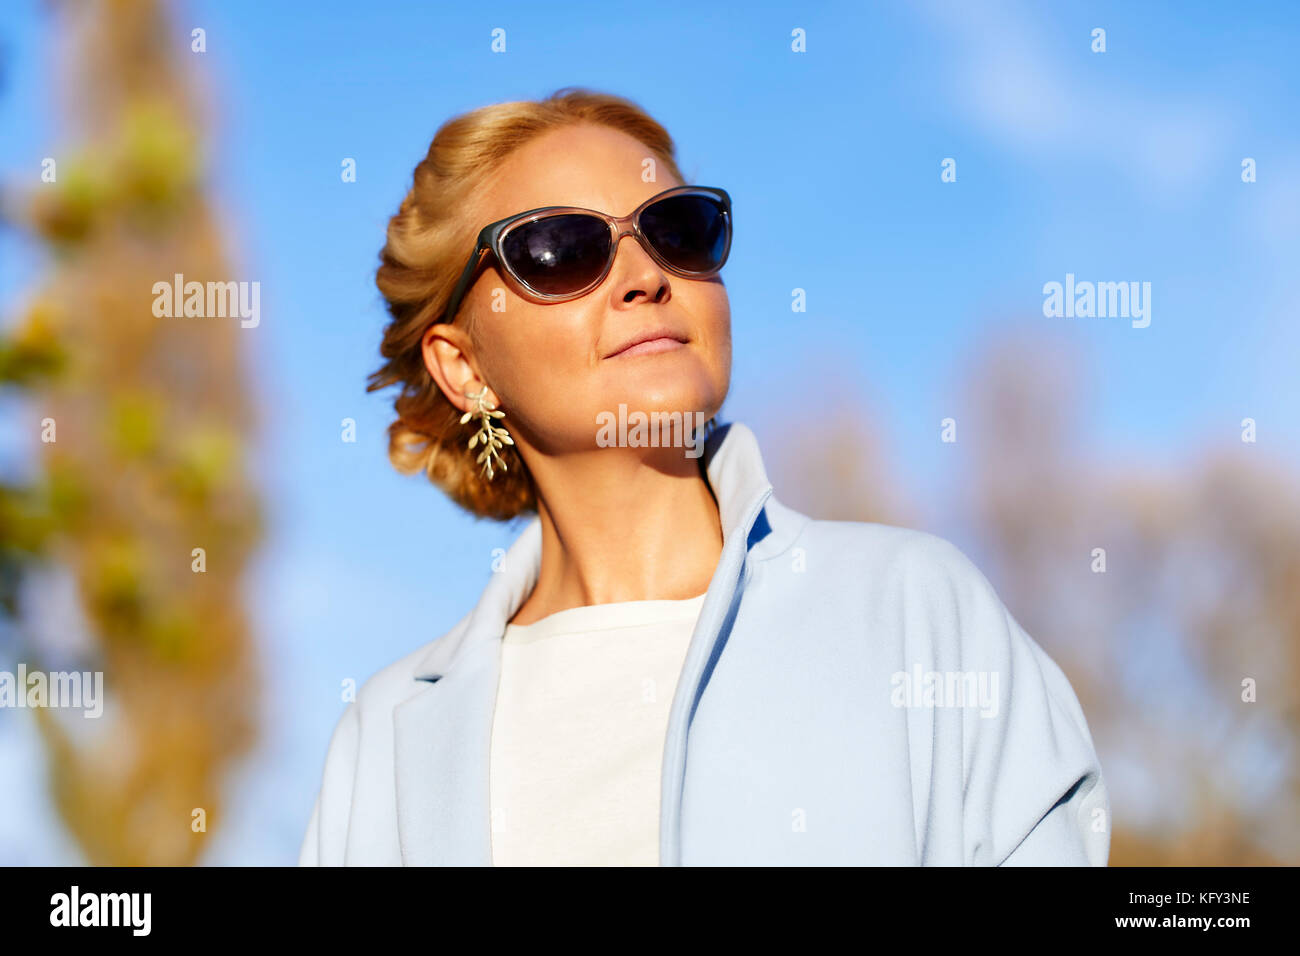 Belle femme portant des lunettes de soleil Banque D'Images